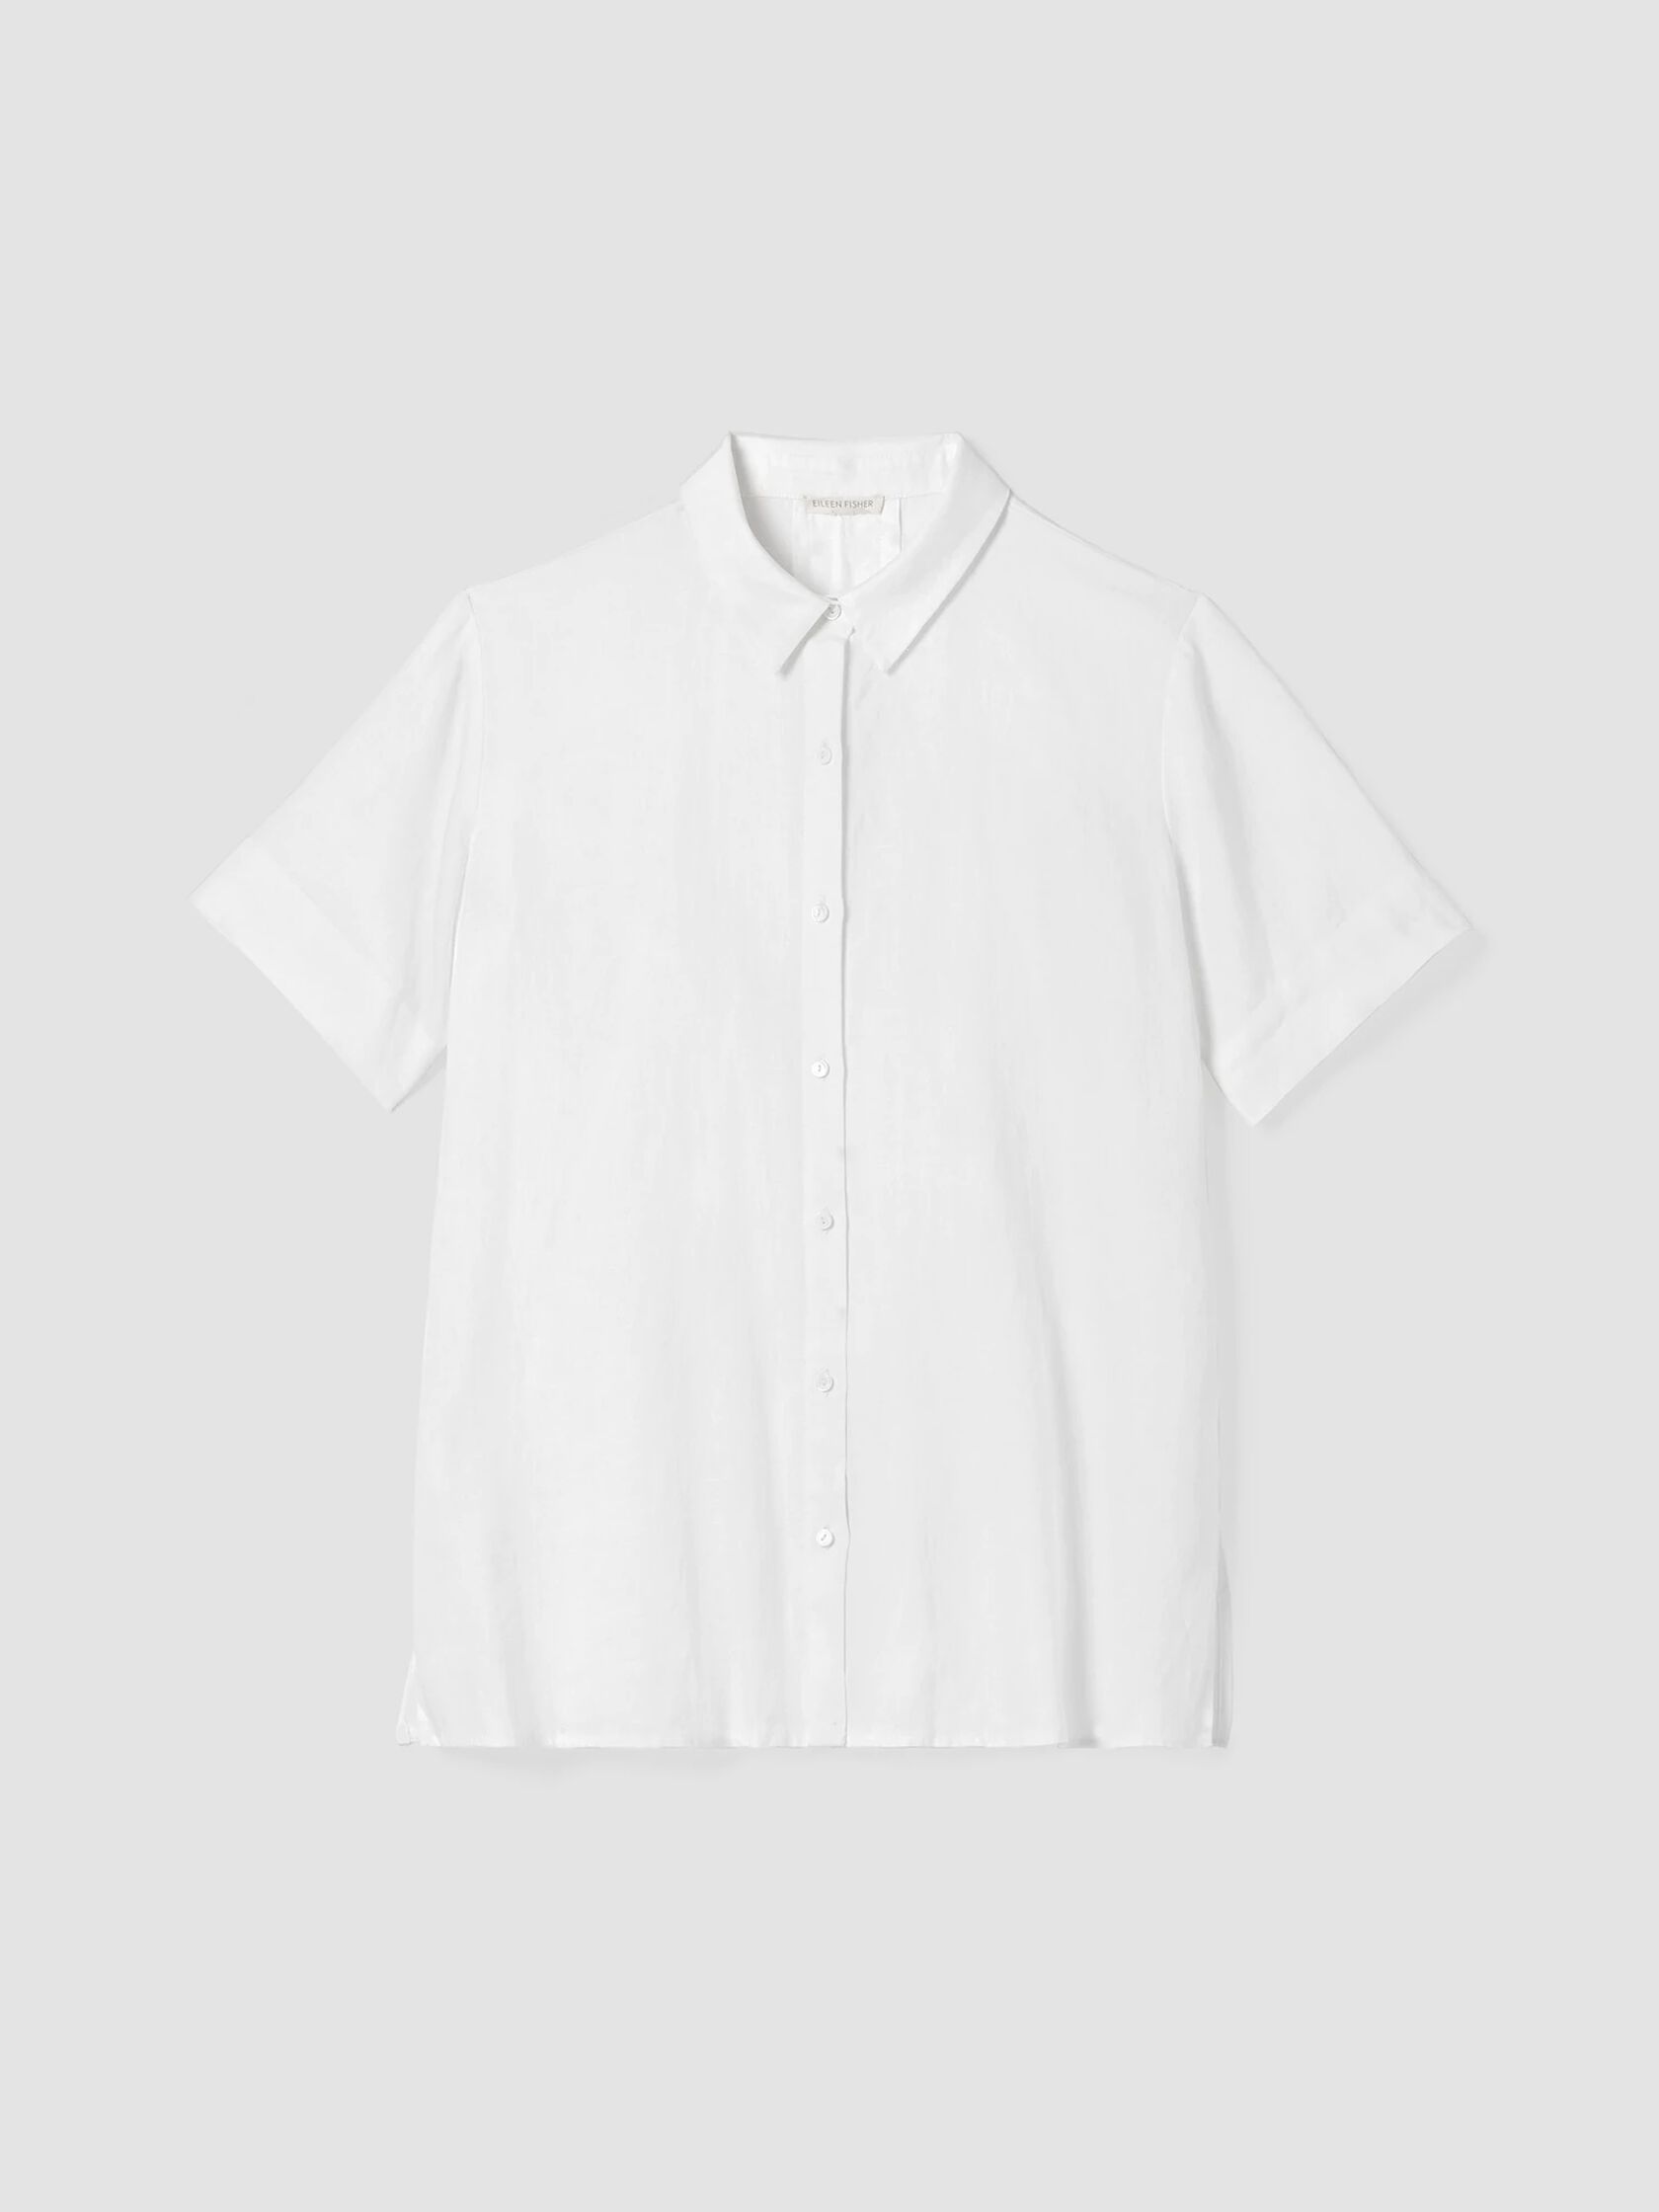 Organic Linen Classic Collar Short-Sleeve Shirt